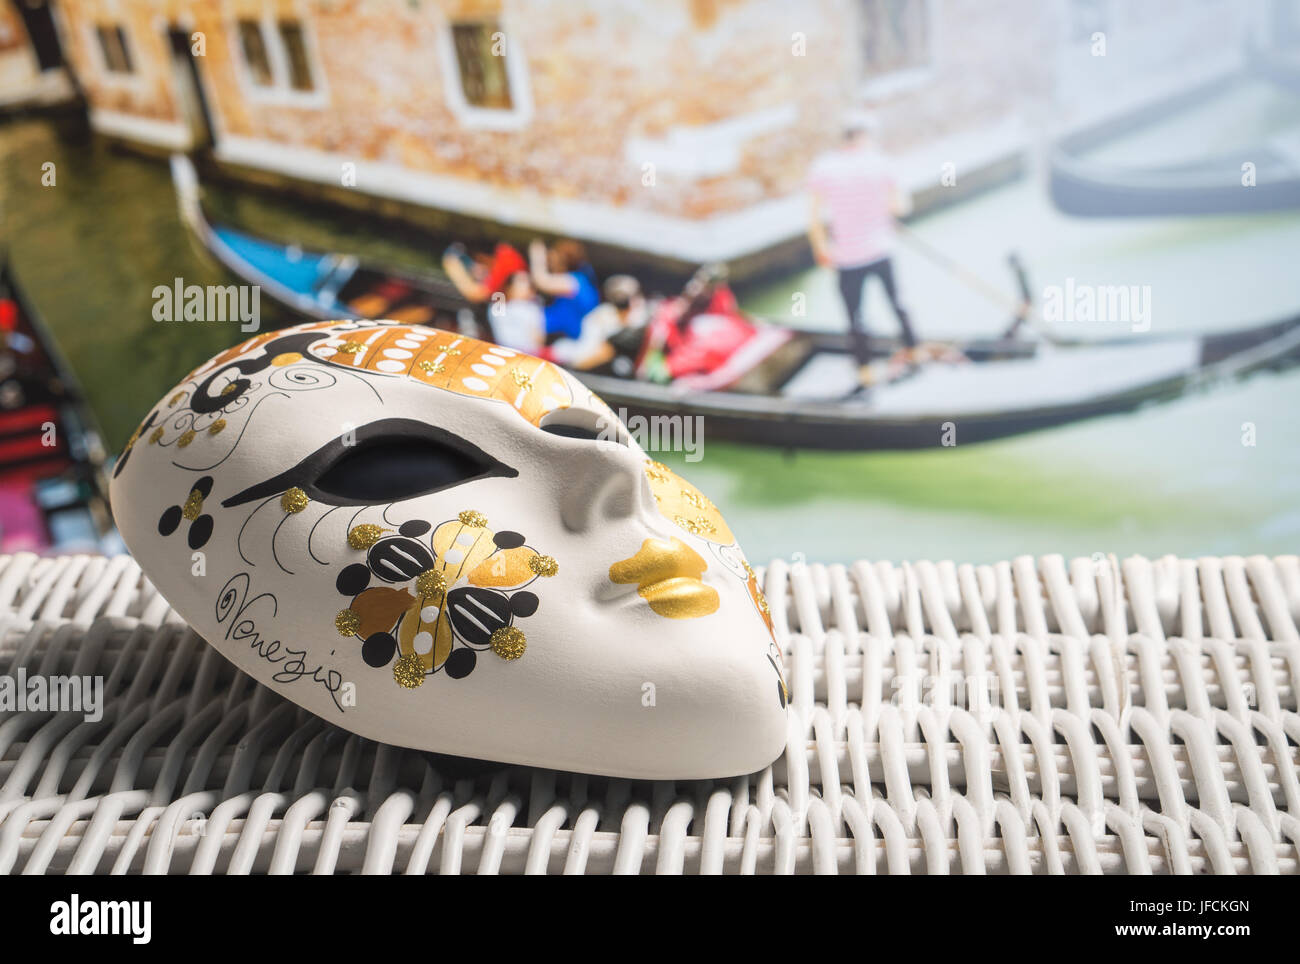 Authentische Maske aus Venedig mit einem Gondoliere und Touristen in der Gondel im Hintergrund. Goldene Souvenirs und traditionellen venezianischen Boot im Kanal. Stockfoto